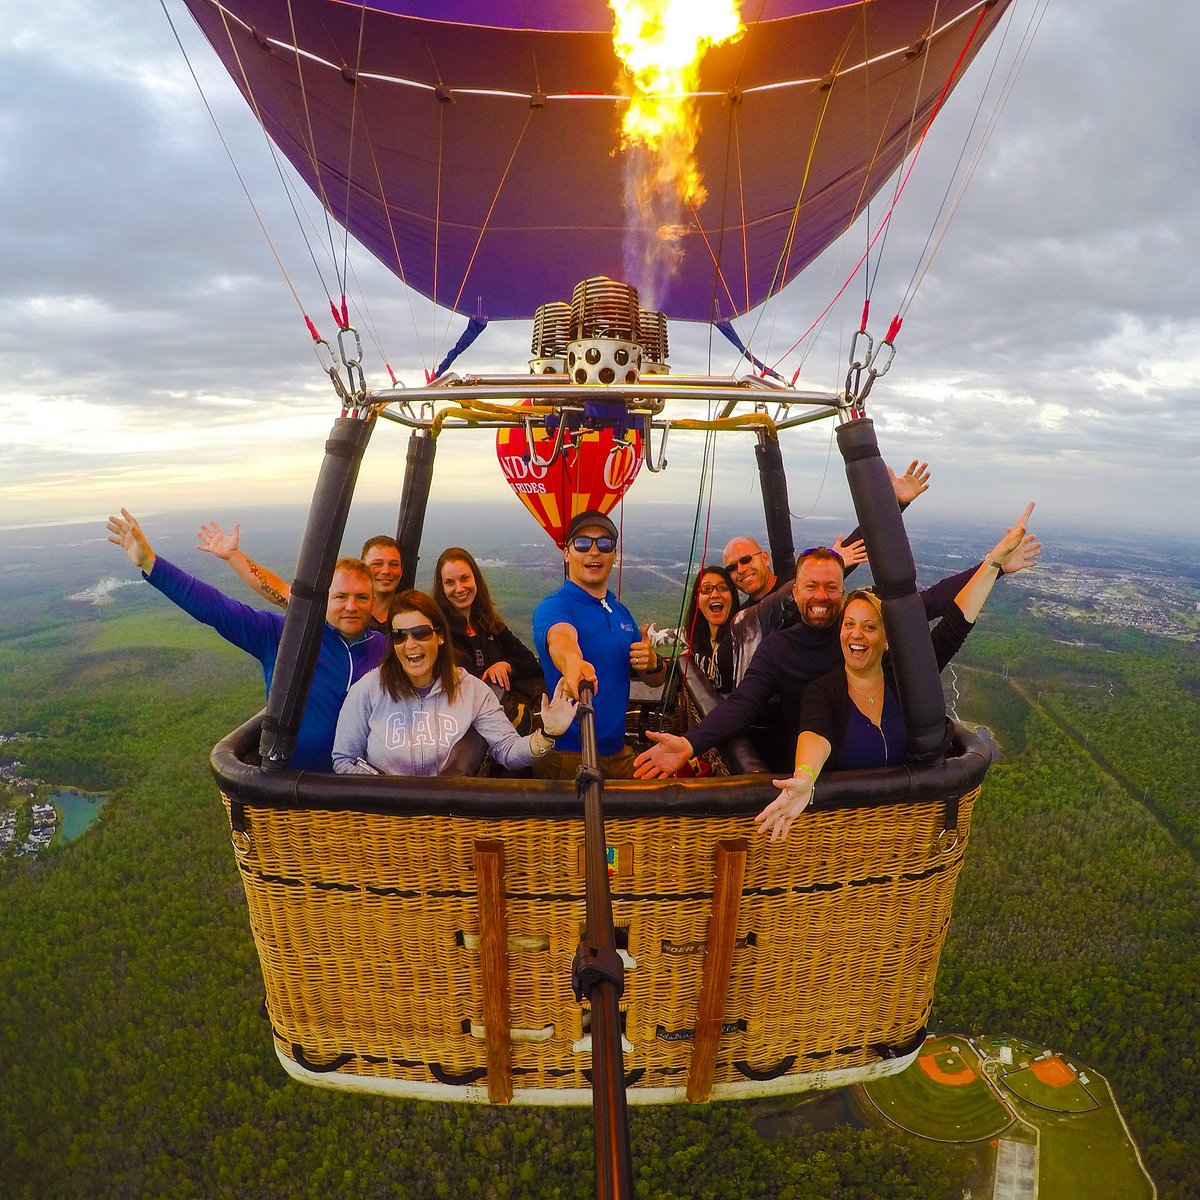 Không gian kỳ thú tại Orlando Balloon Rides sẽ làm cho bạn thăng hoa trong cảm giác đáng nhớ. Hòa mình vào khoảng không tràn đầy bầu trời, bạn sẽ được ngắm nhìn toàn cảnh vùng đất Florida rực rỡ. Đây sẽ là một trải nghiệm tuyệt vời cho những ai muốn trốn khỏi cuộc sống bận rộn và thực sự tận hưởng không gian rộng lớn.